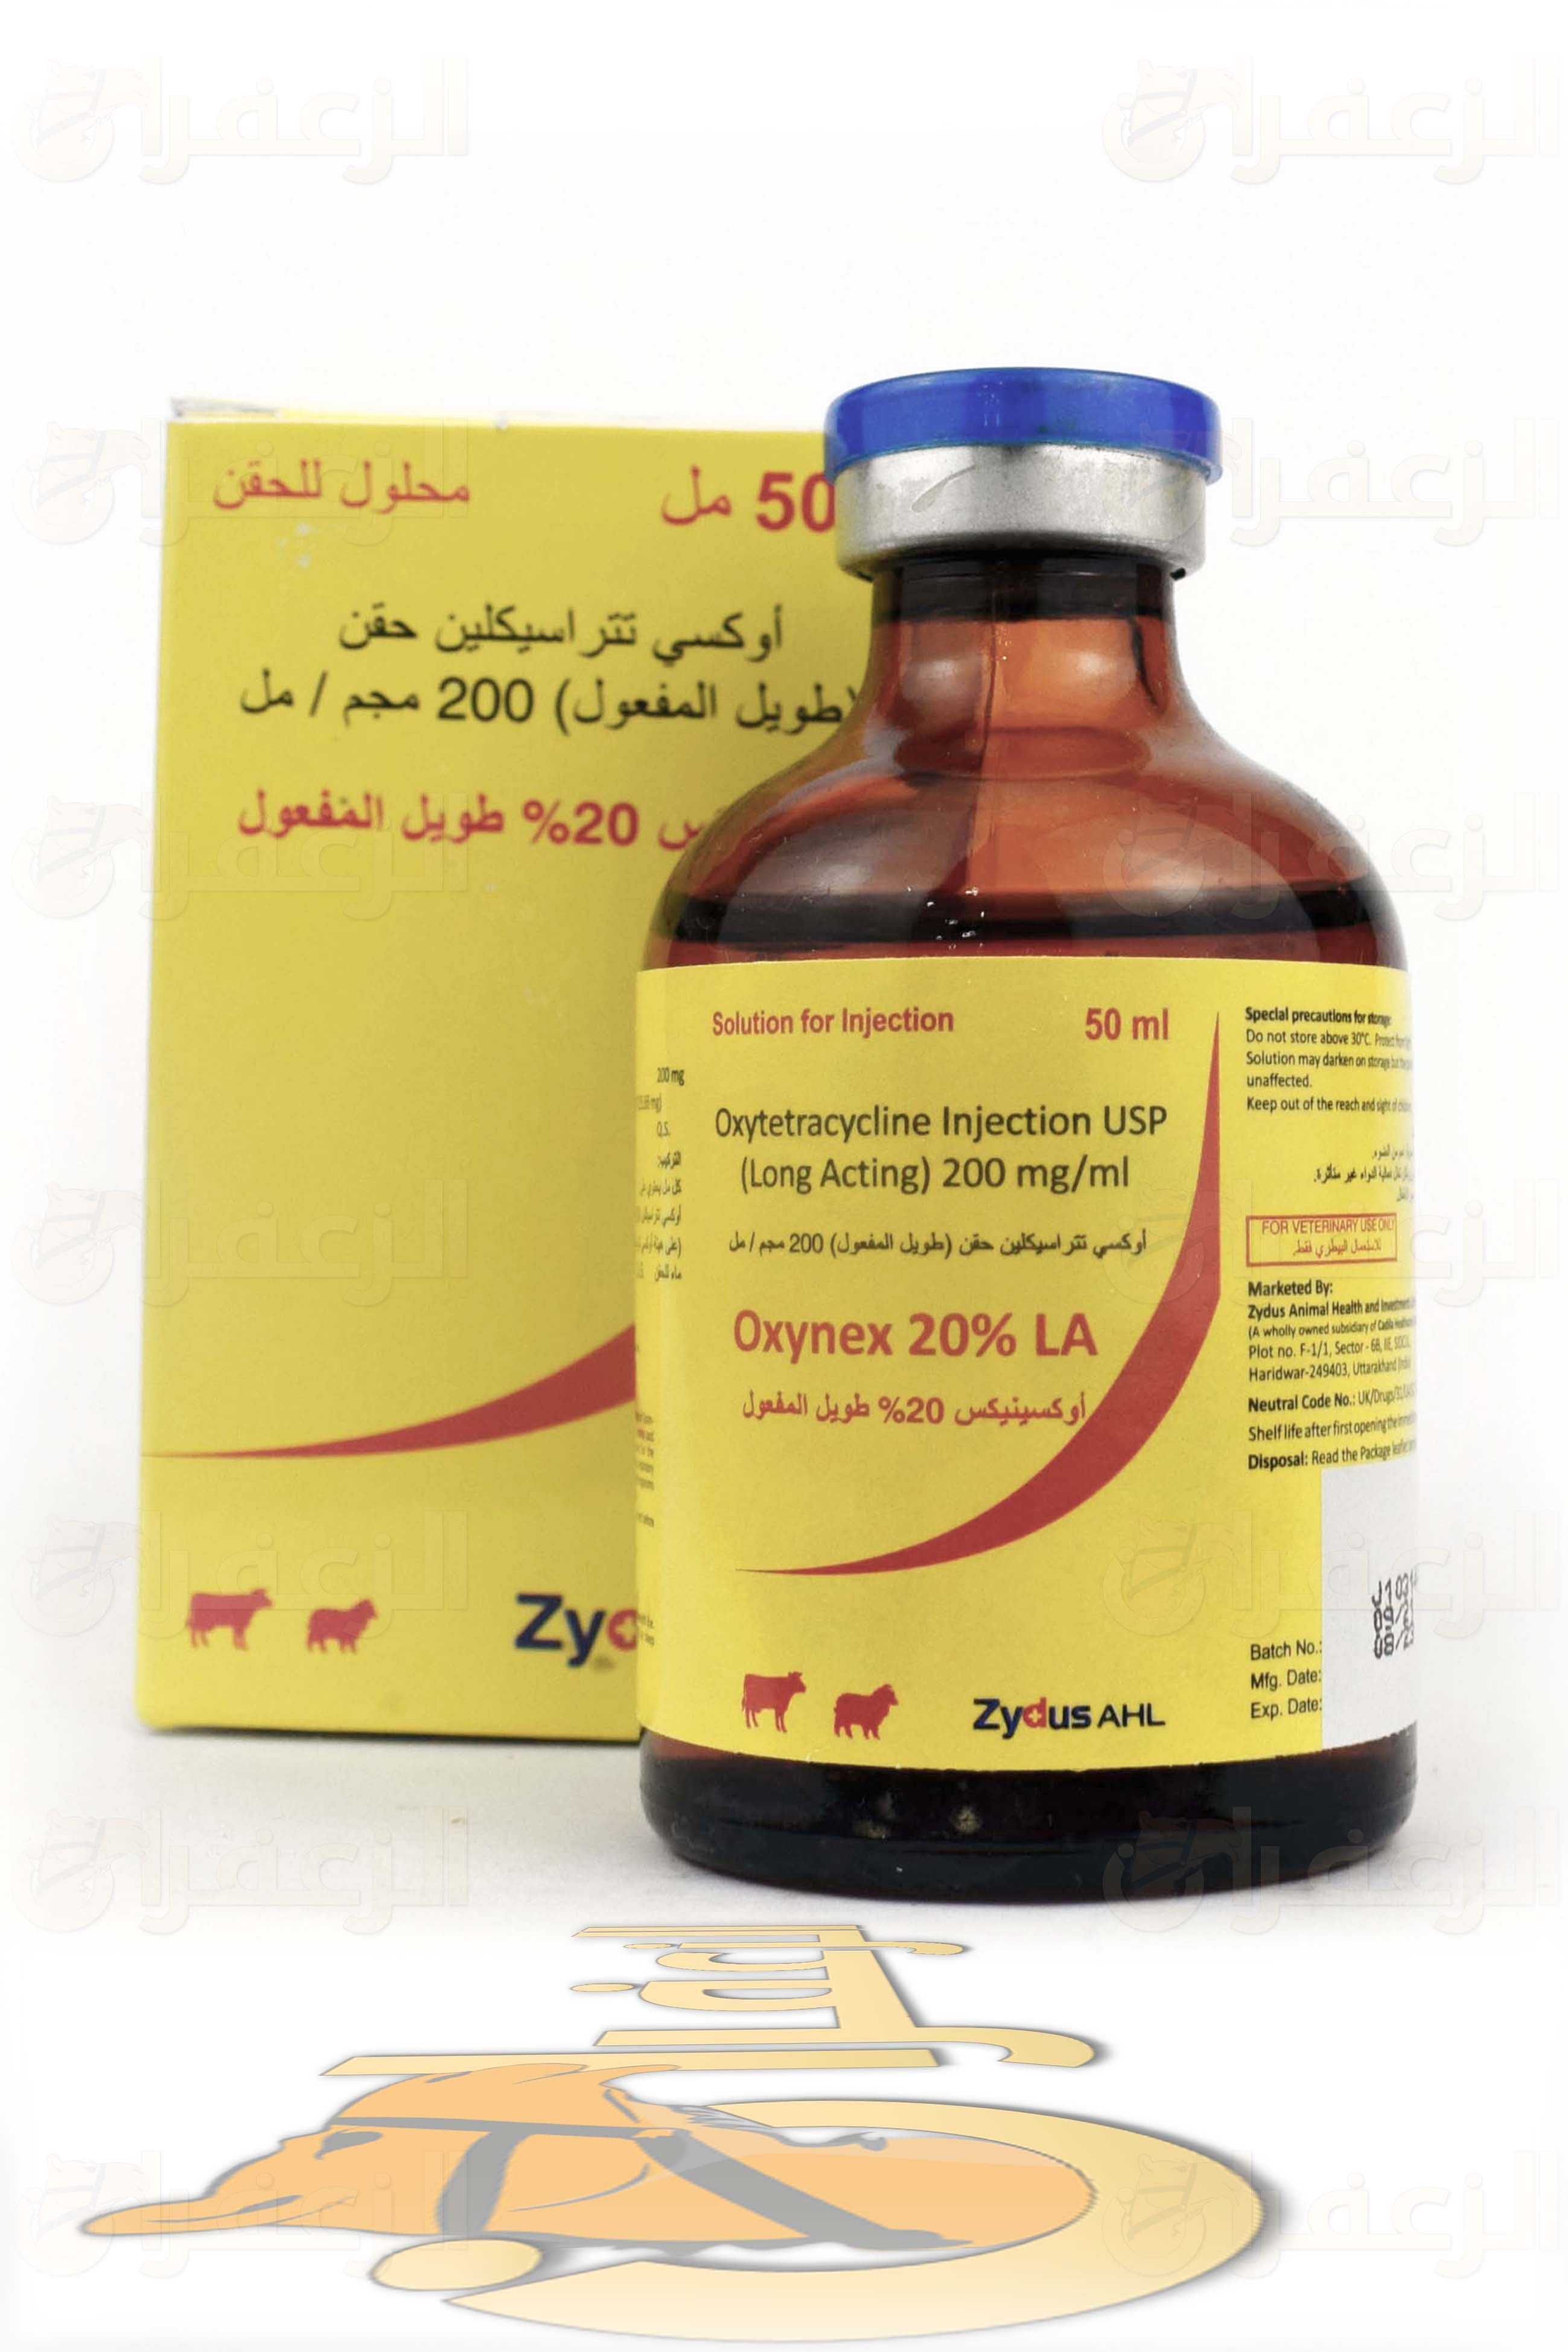 OXYNEX 20% LA - الزعفران